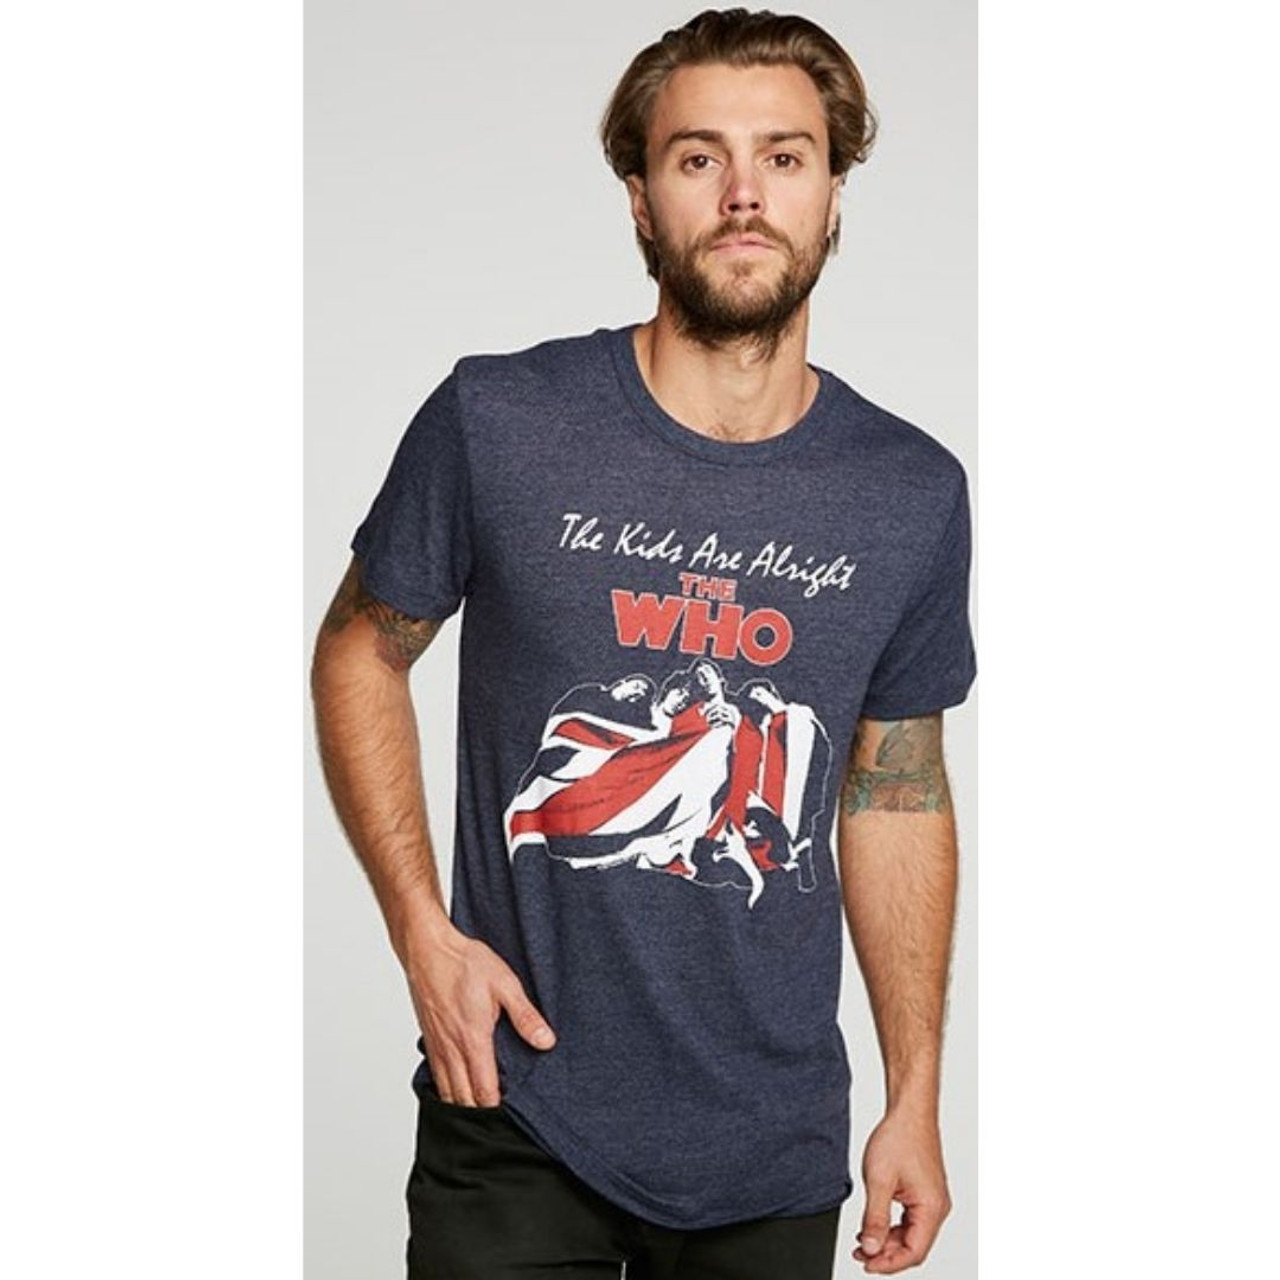 Regnjakke uregelmæssig eksil The Who Vintage T-shirt by Chaser - The Kids are Alright Film Poster and  Soundtrack Album Cover Artwork. Men's Blue Fashion Shirt - Rocker Rags